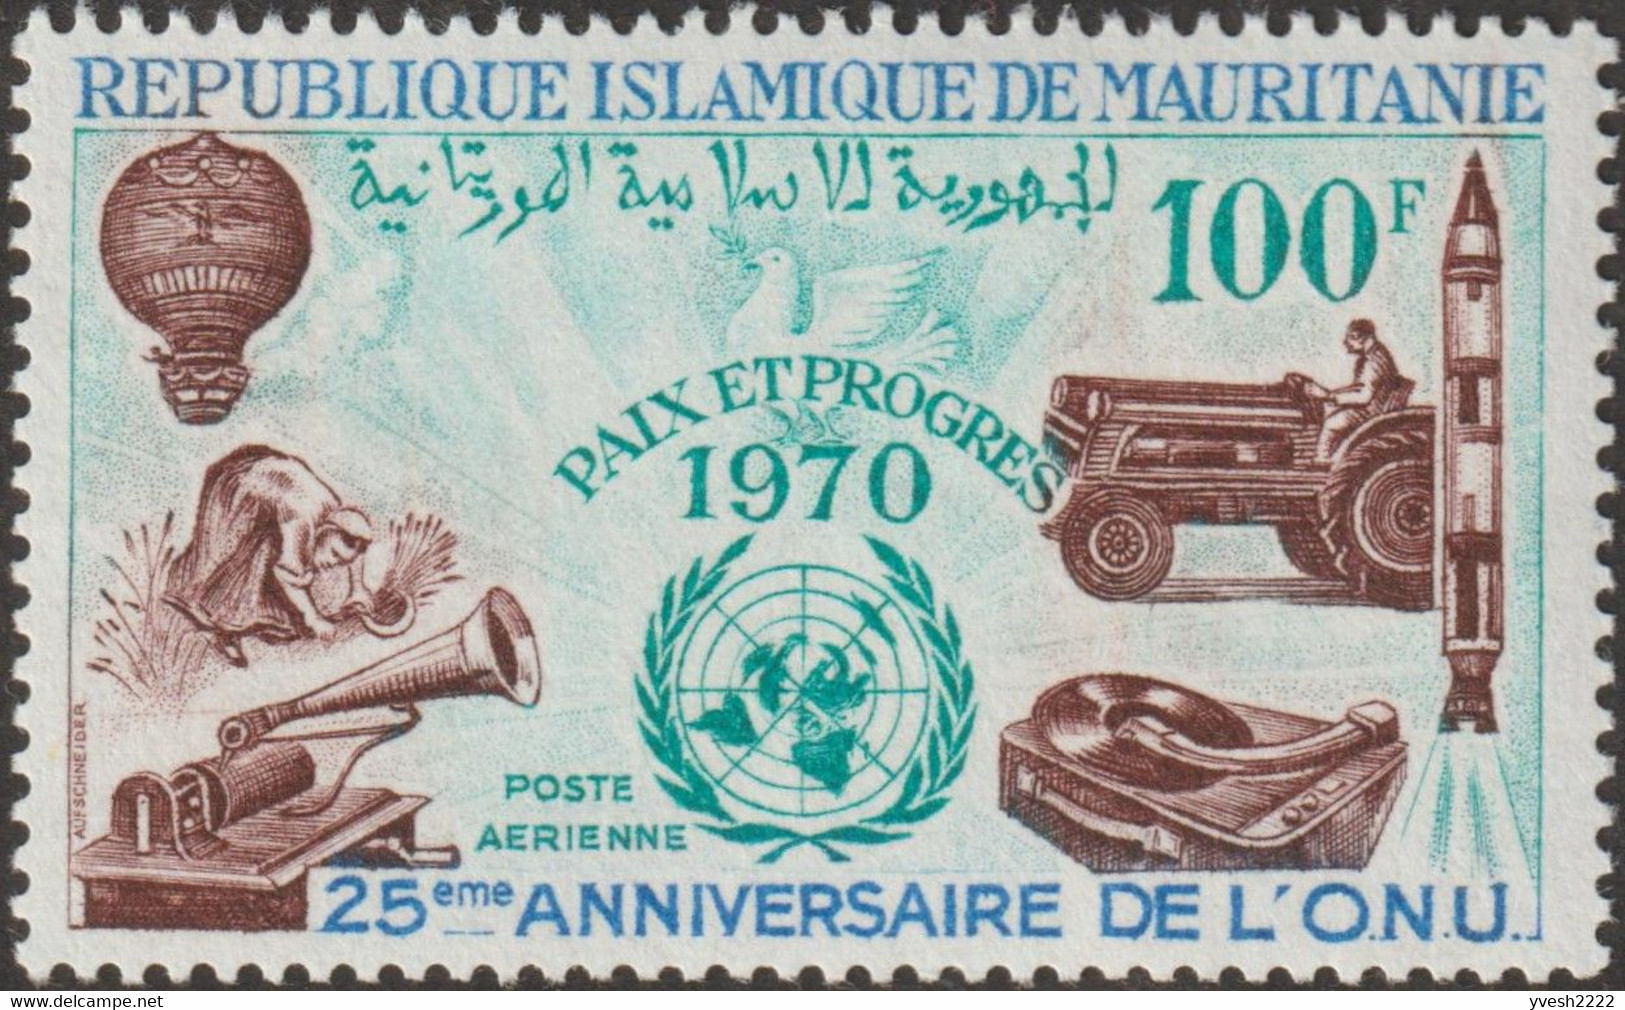 Mauritanie 1970 Y&T PA 110. Dessin Original. ONU, Colombe De La Paix, Montgolfière, Fusée, Faux Et Tracteur, Phonographe - Agriculture